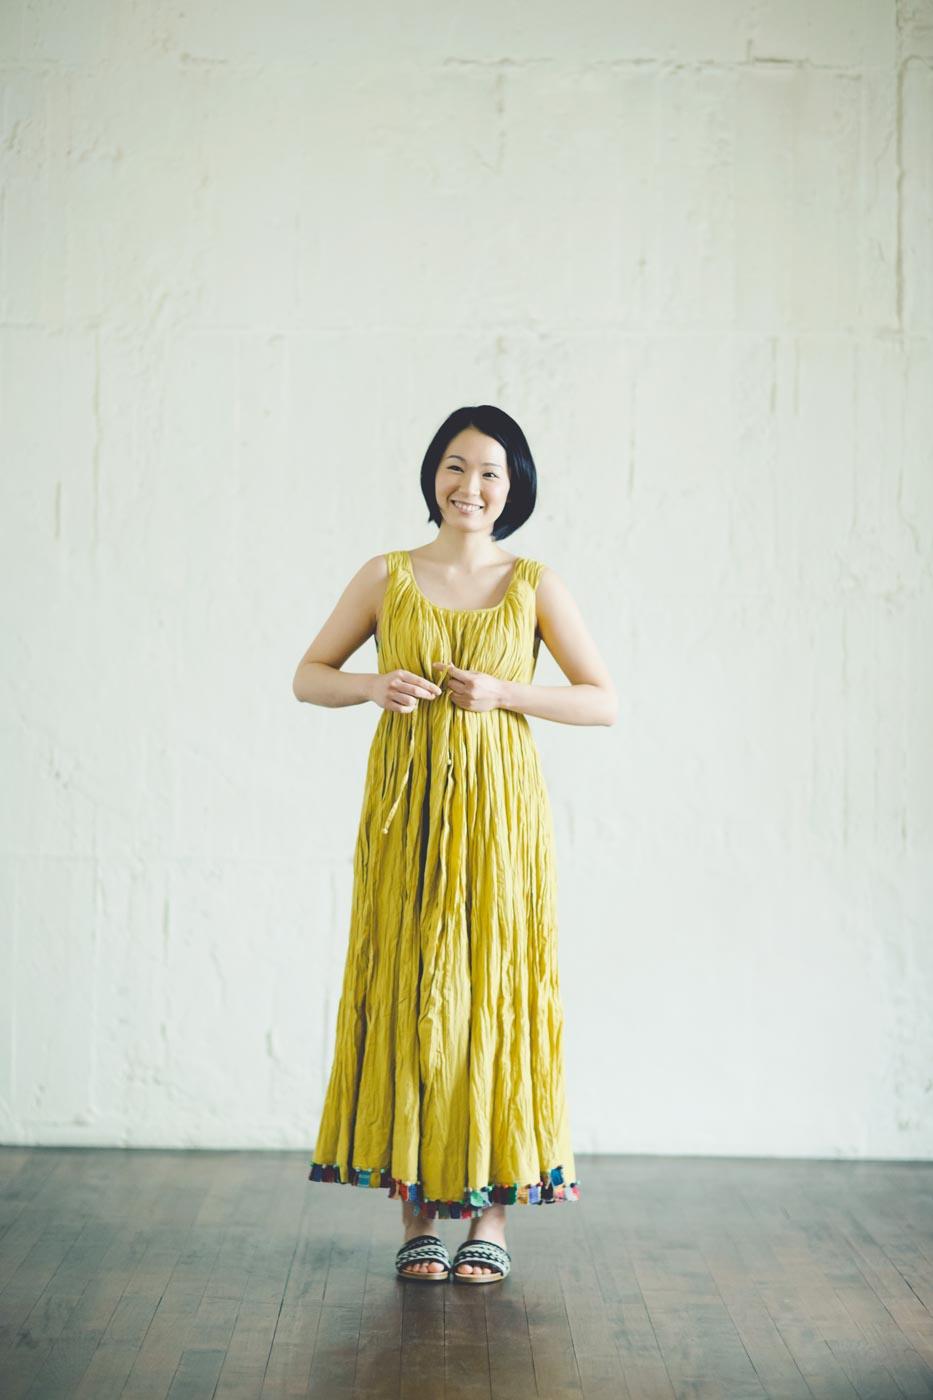 ババグーリ: 黄色のドレス